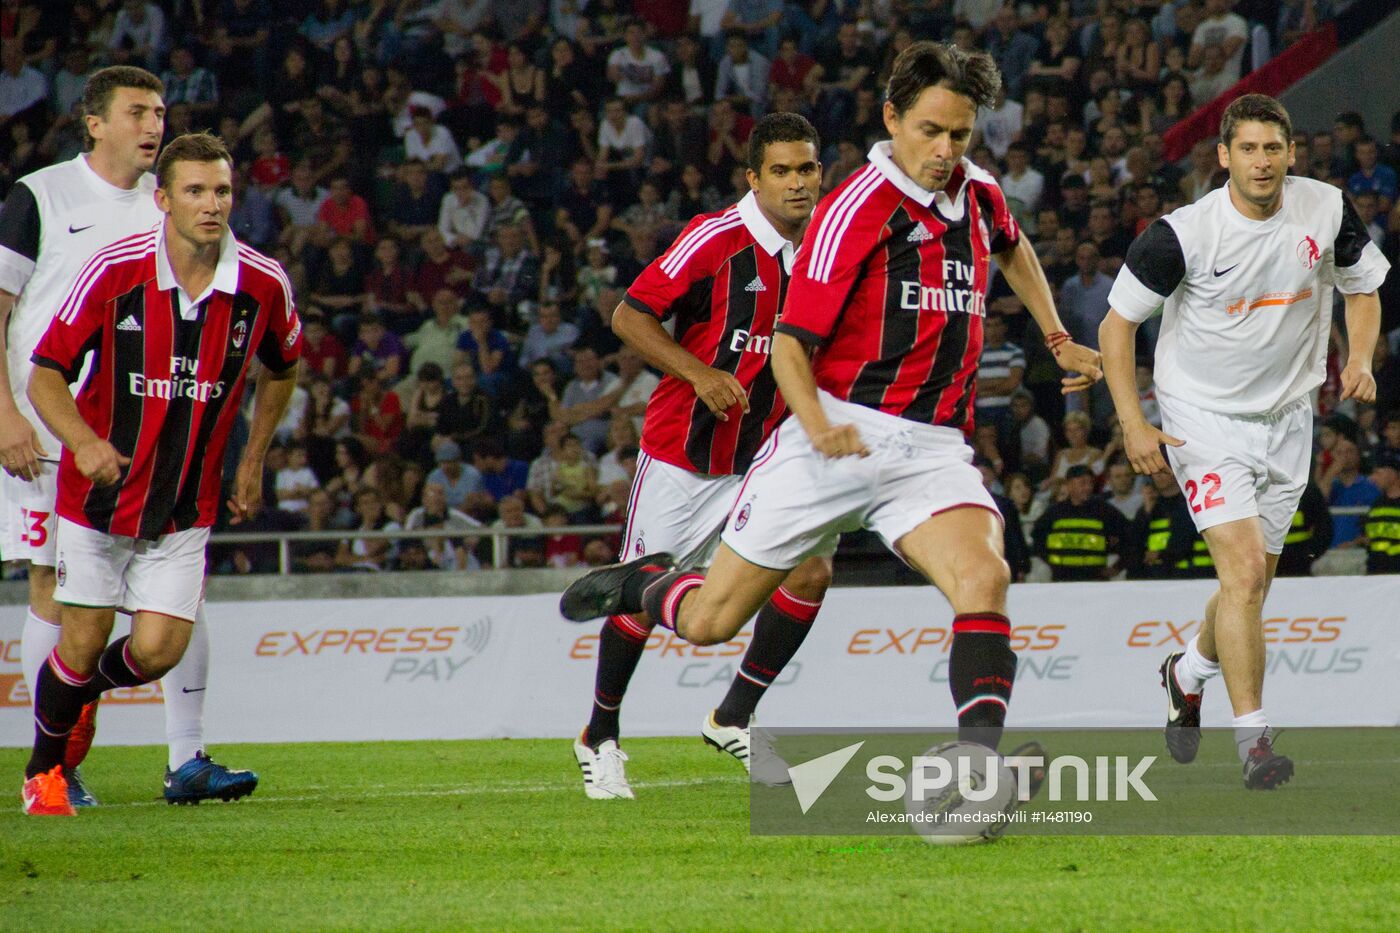 Farewell match for former FC Milan player Kakha Kaladze